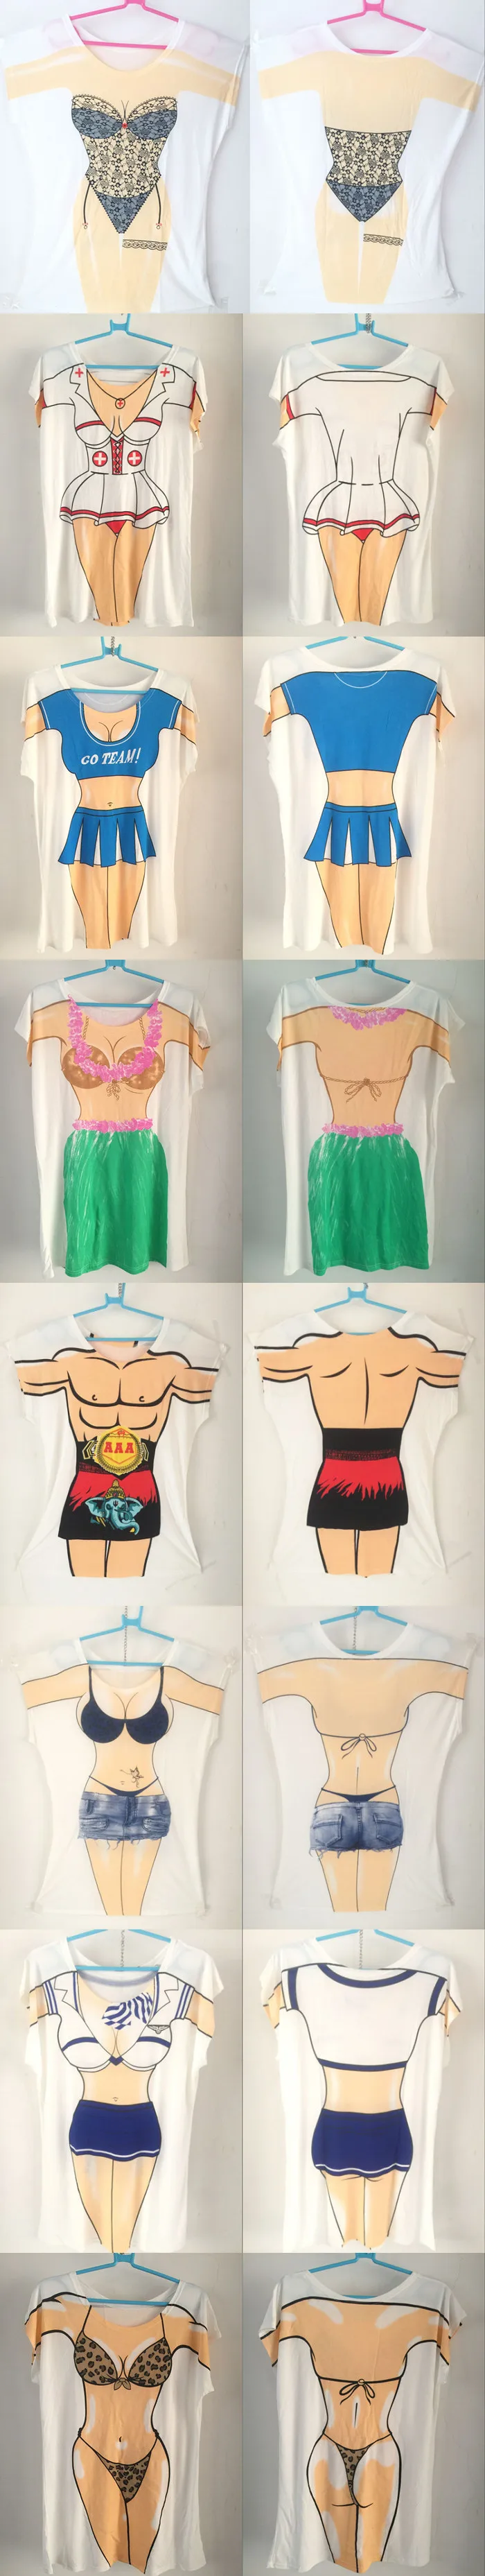 Ejqyhqr Noveity Летняя женская забавная футболка сексуальное бикини с принтом, накидка для ночного клуба, вечерние, пляжные футболки для женщин, Модальные топы, футболки